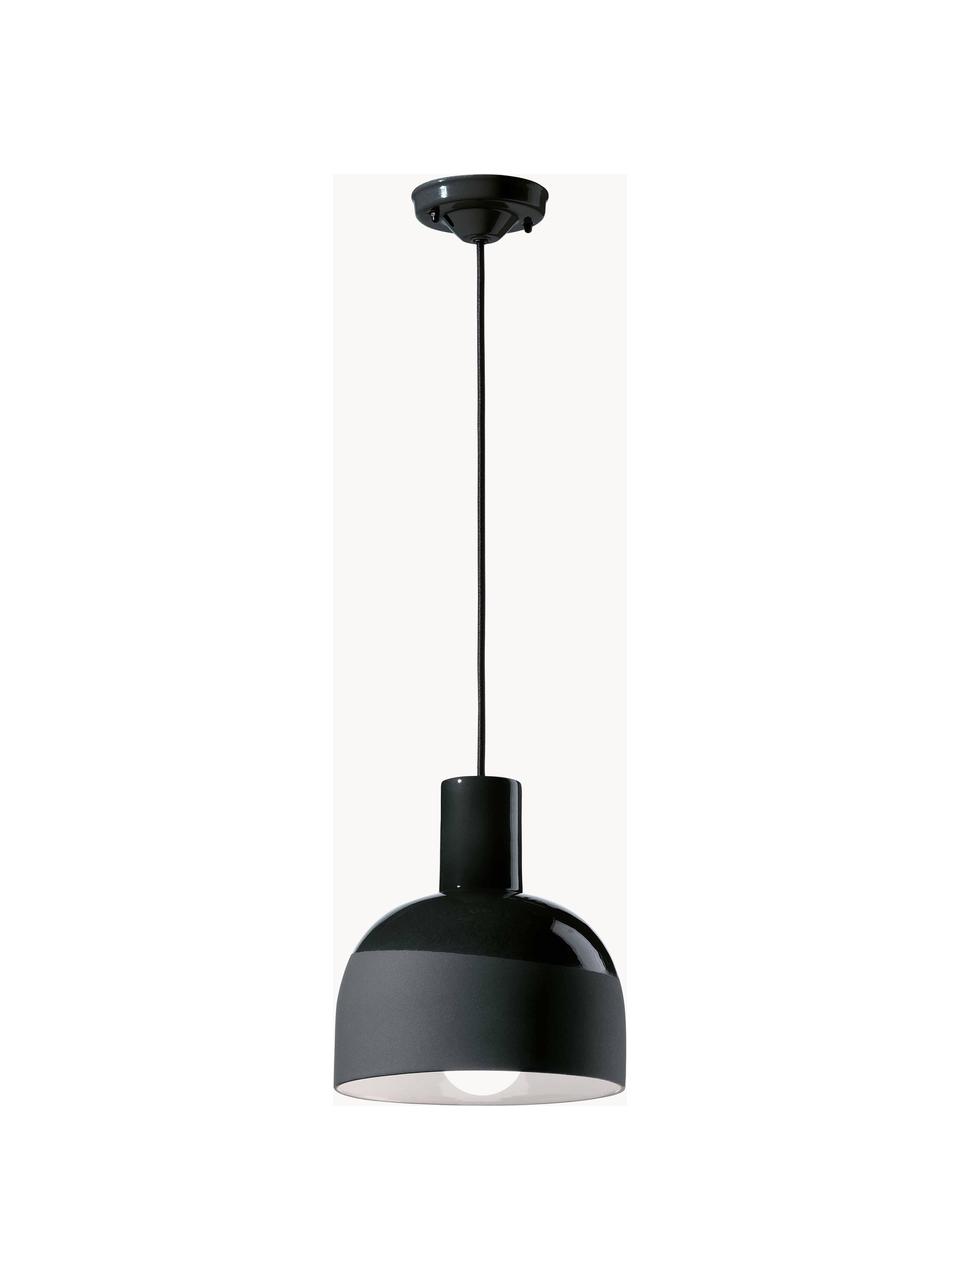 Lámpara de techo artesanal pequeña Caxixi, Pantalla: cerámica, Anclaje: cerámica, Cable: cubierto en tela, Negro, Ø 23 x Al 27 cm